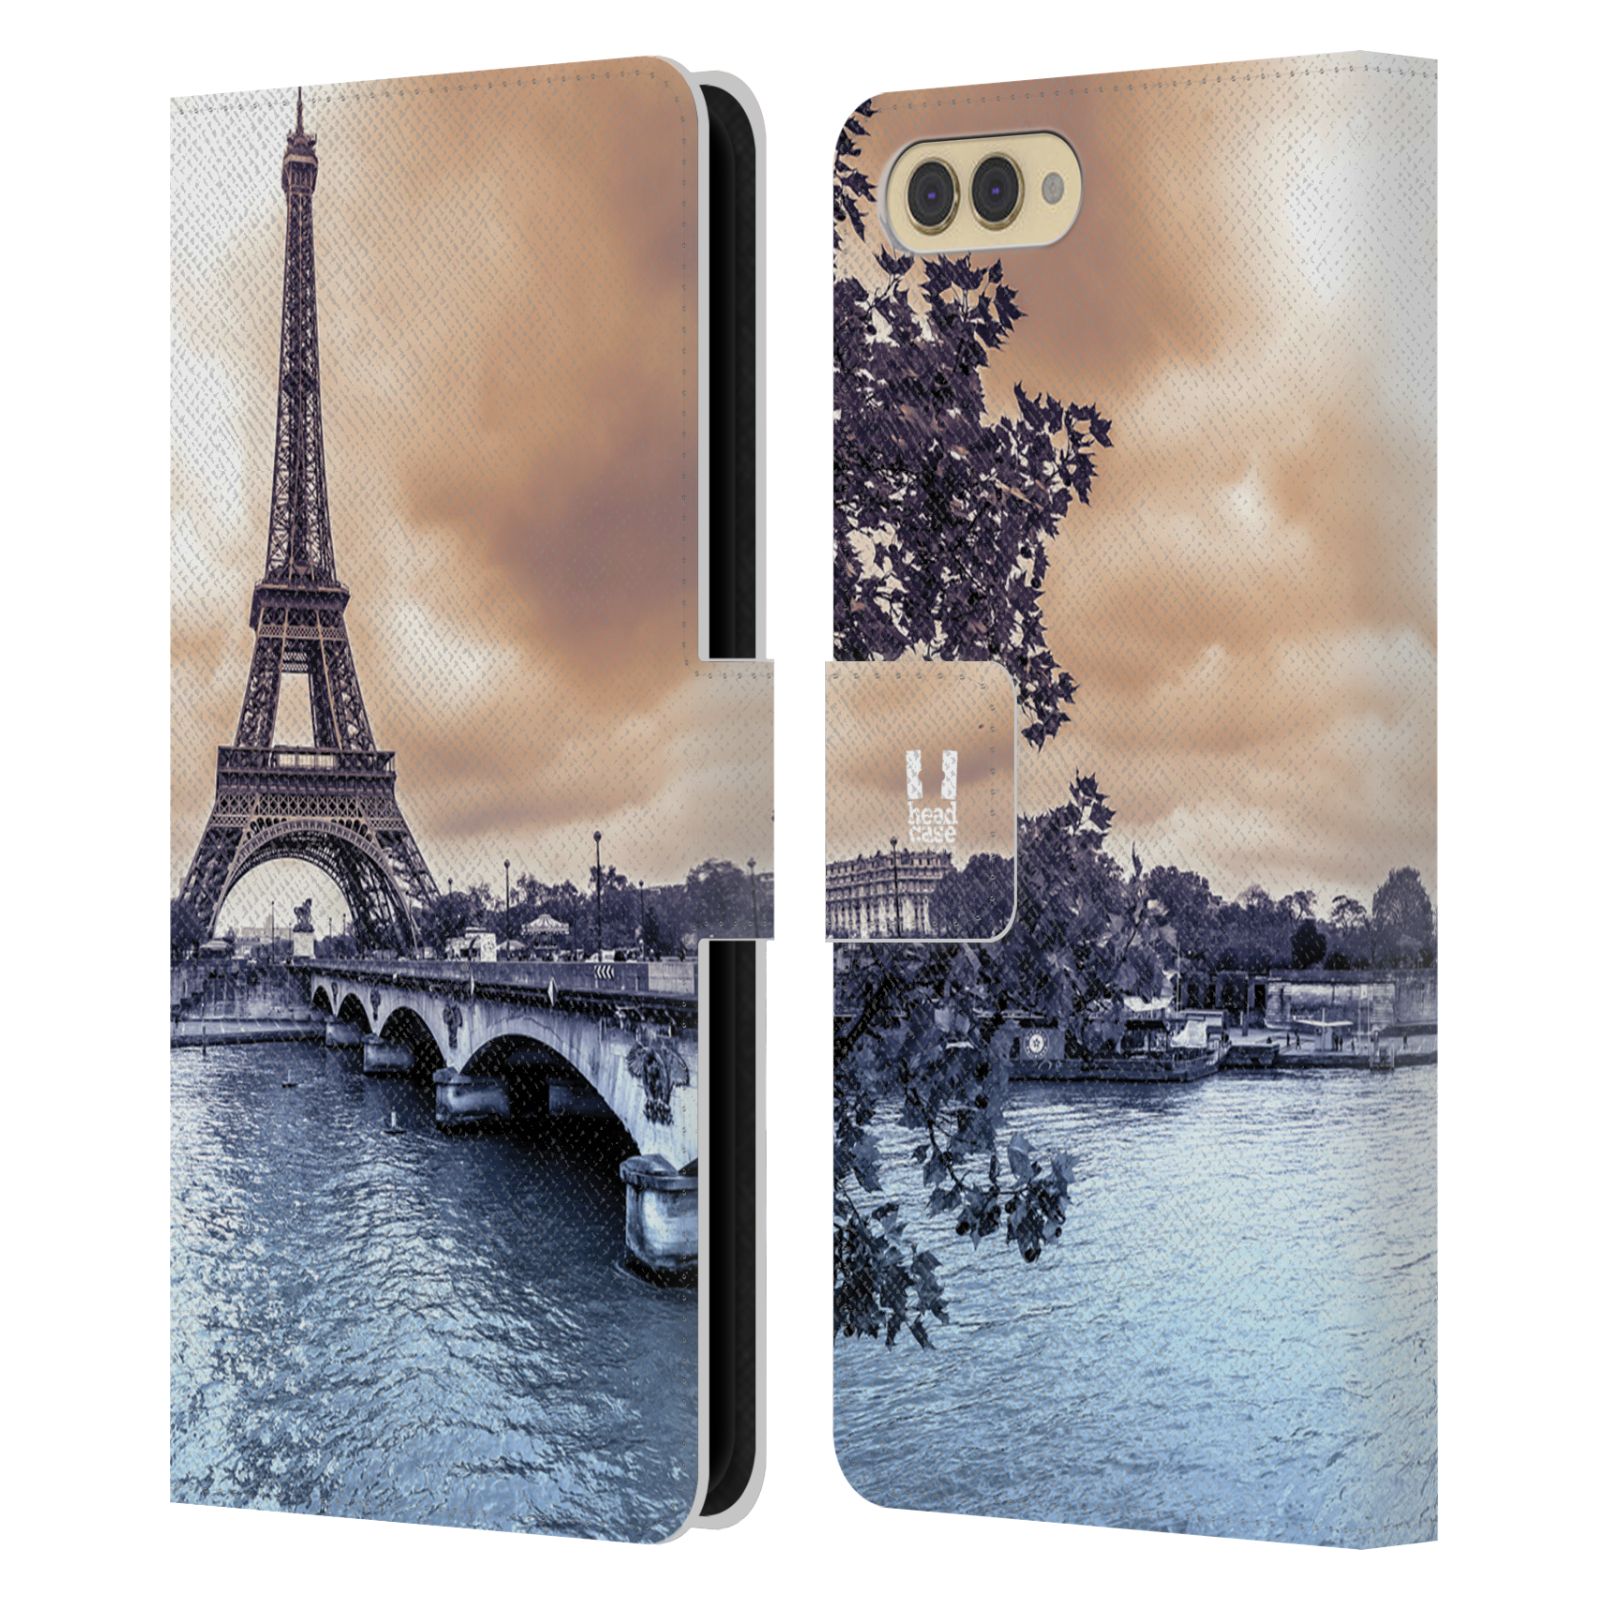 Pouzdro na mobil Honor  View 10 / V10 - Head Case - Paříž Eiffelova věž